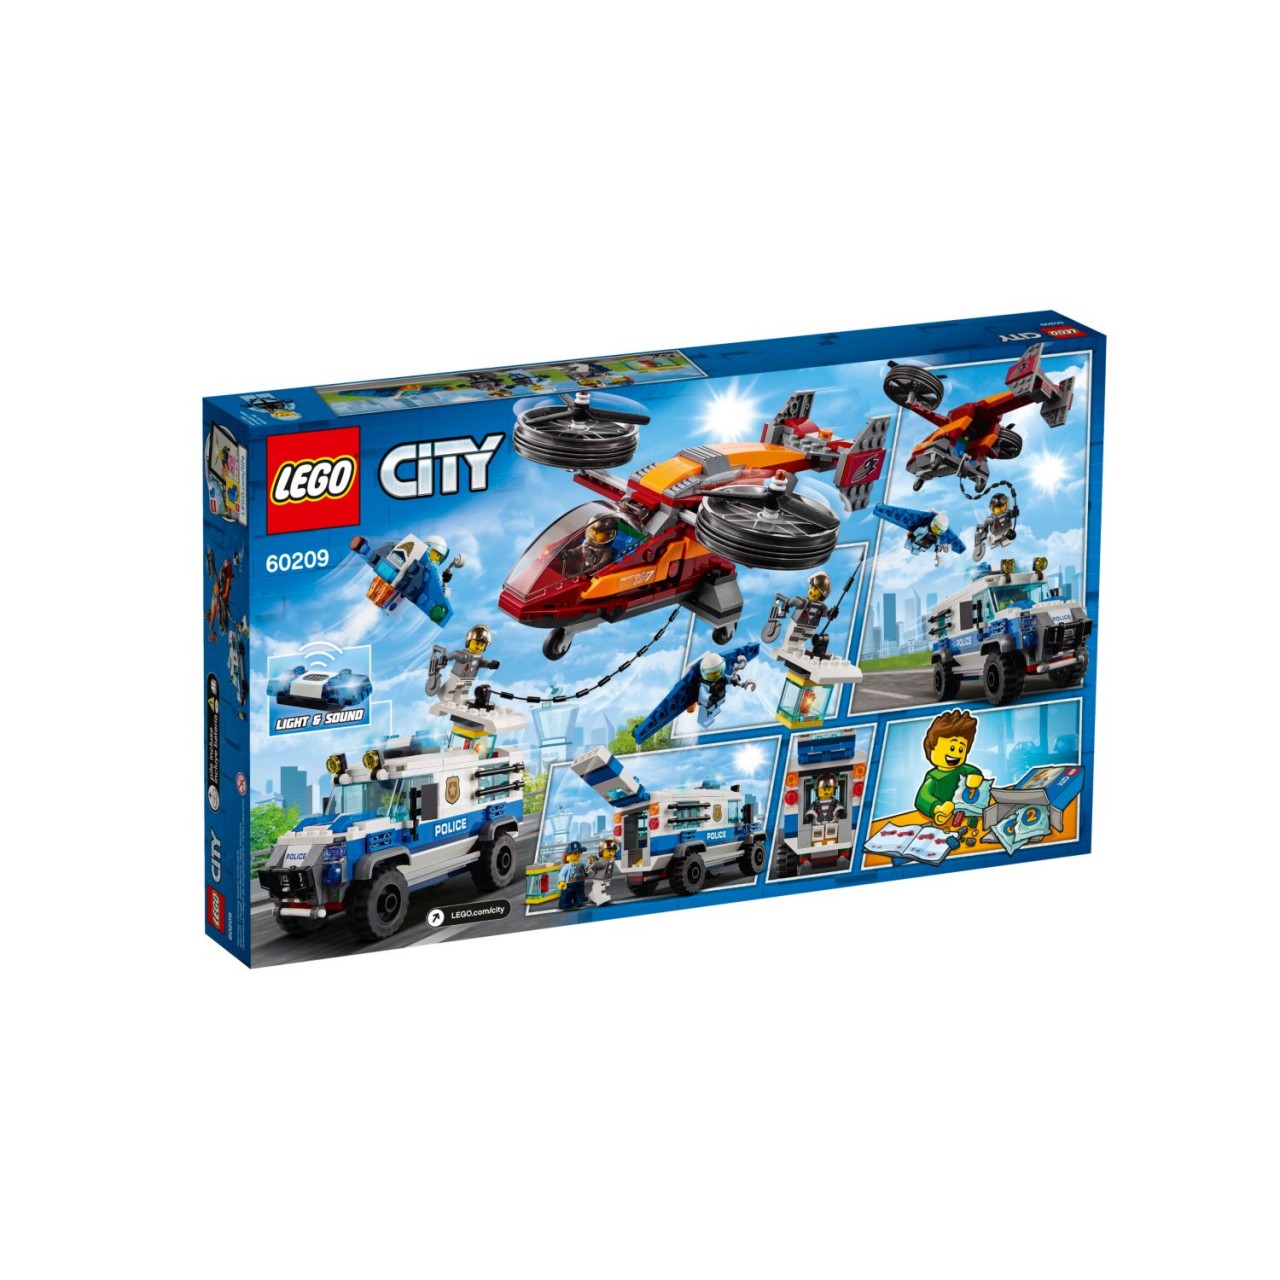 LEGO CITY 60209 Polizei Diamantenraub